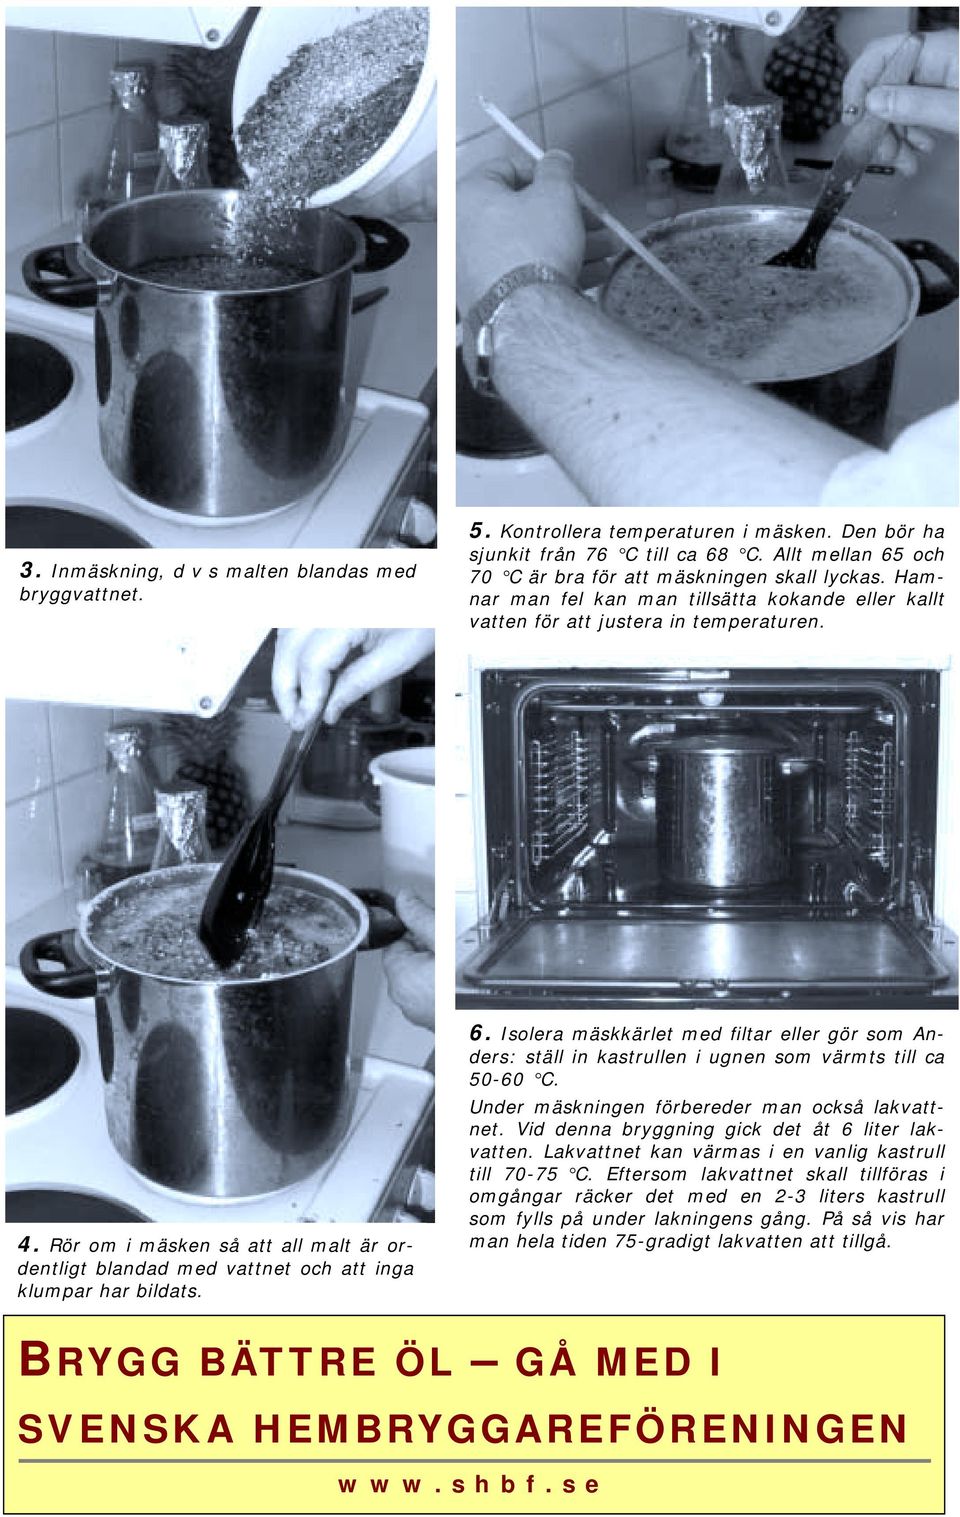 Isolera mäskkärlet med filtar eller gör som Anders: ställ in kastrullen i ugnen som värmts till ca 50-60 C. Under mäskningen förbereder man också lakvattnet.